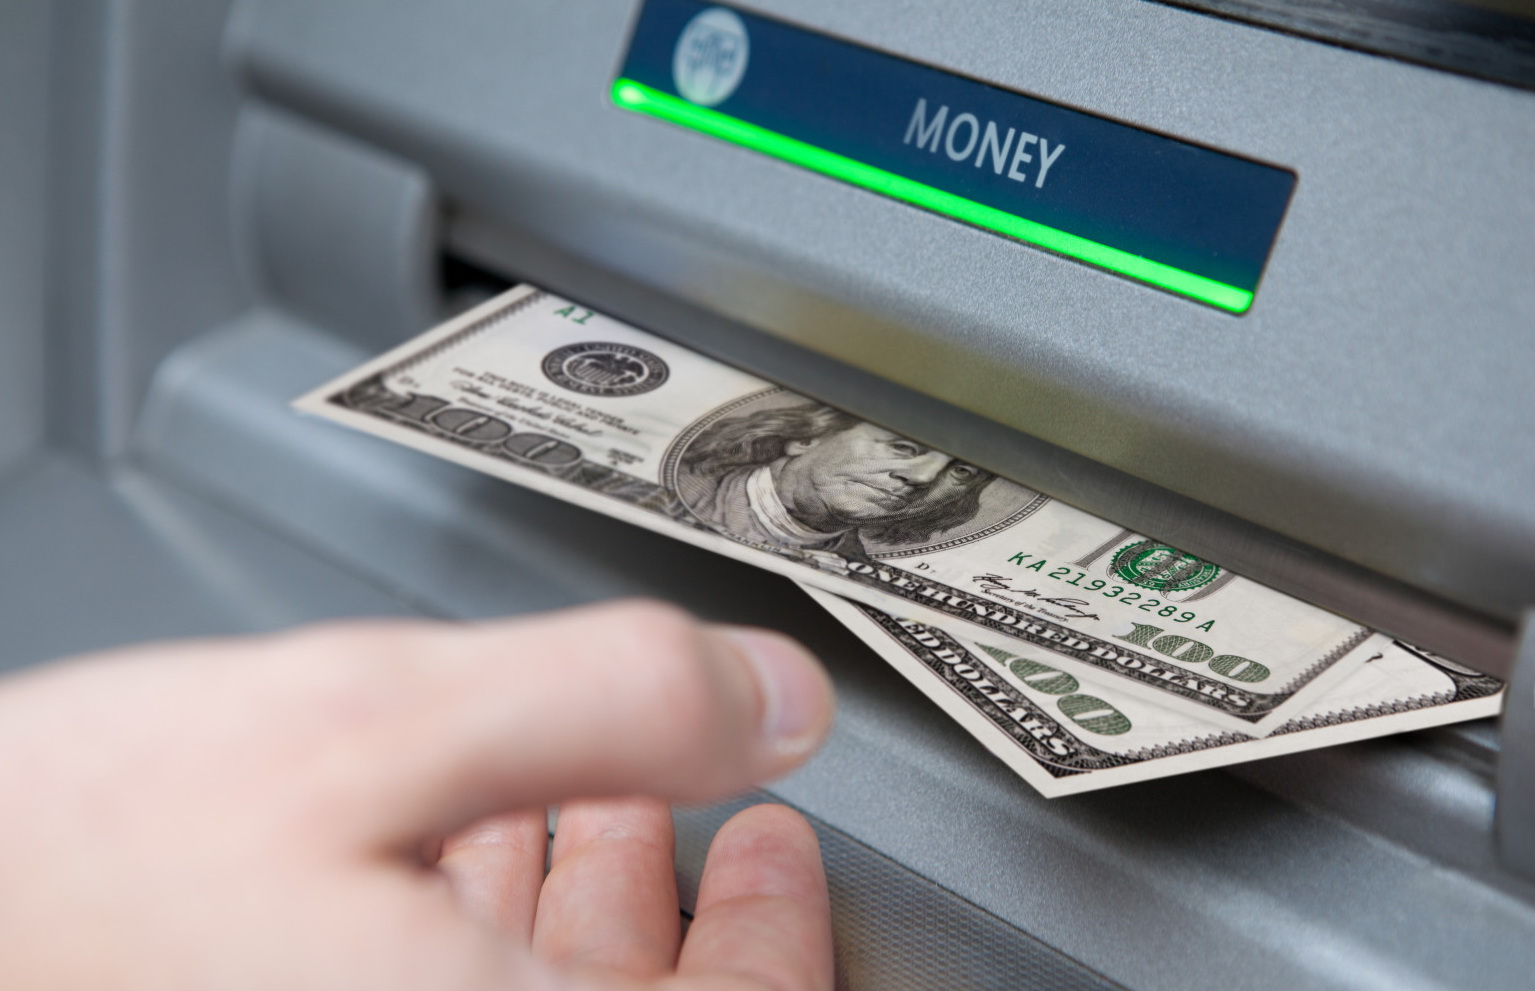 Приват, Ощад та інші банки запровадили нові правила зняття готівки